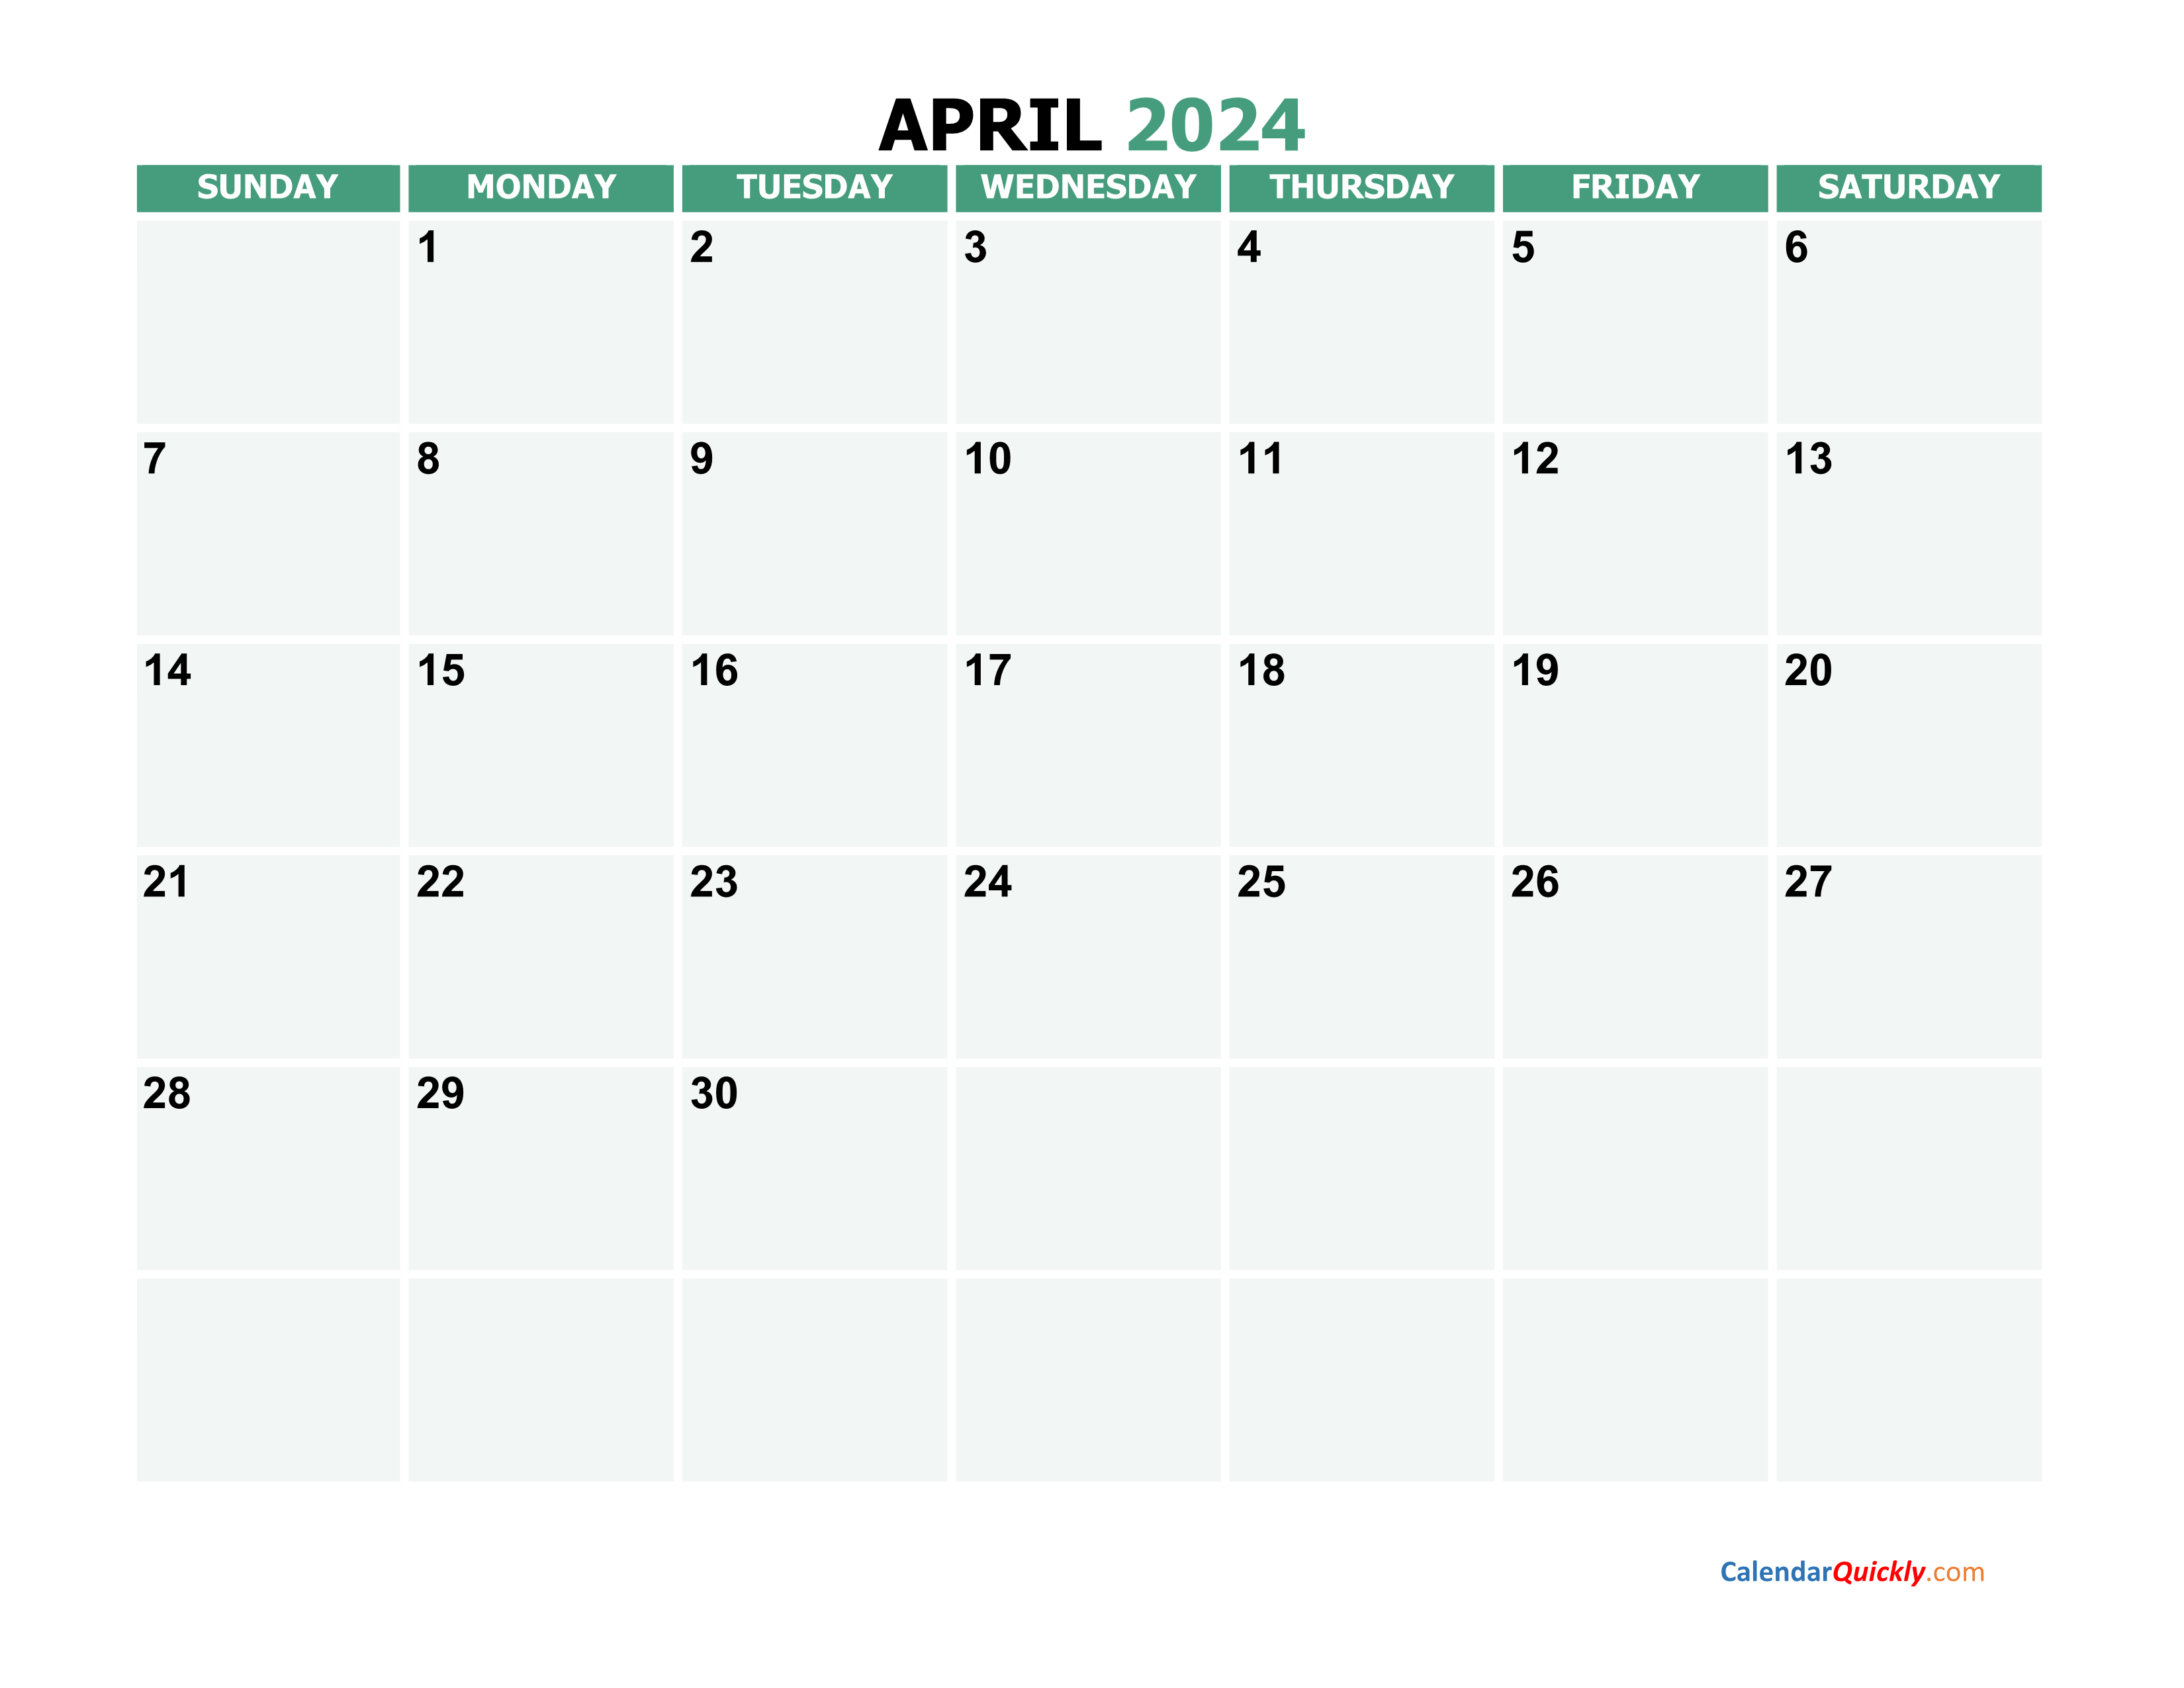 april-2024-calendars-calendar-quickly